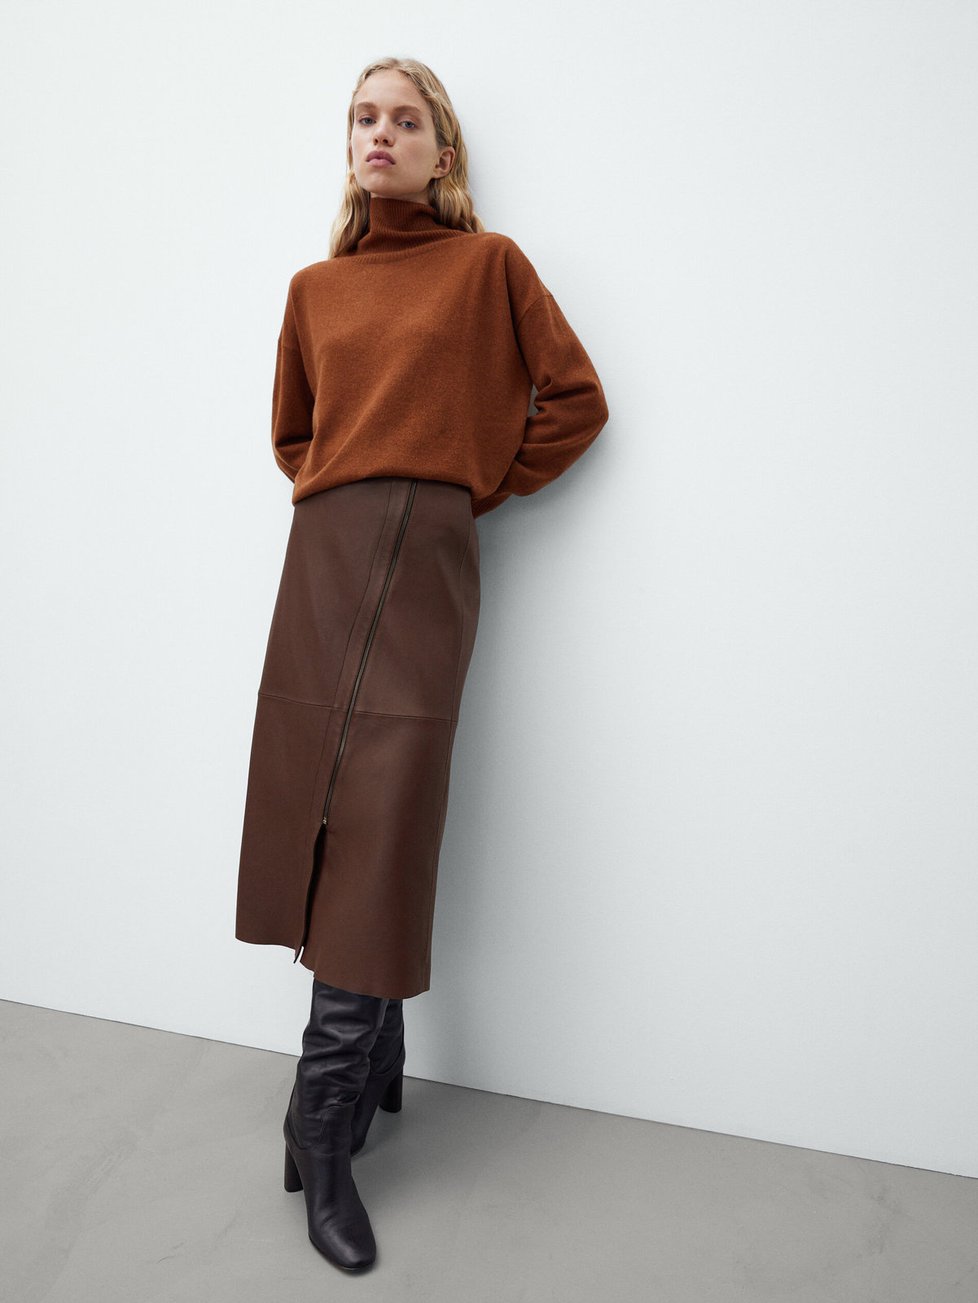 Massimo Dutti kožená sukně, původní cena 6595 Kč, po slevě 3999 Kč